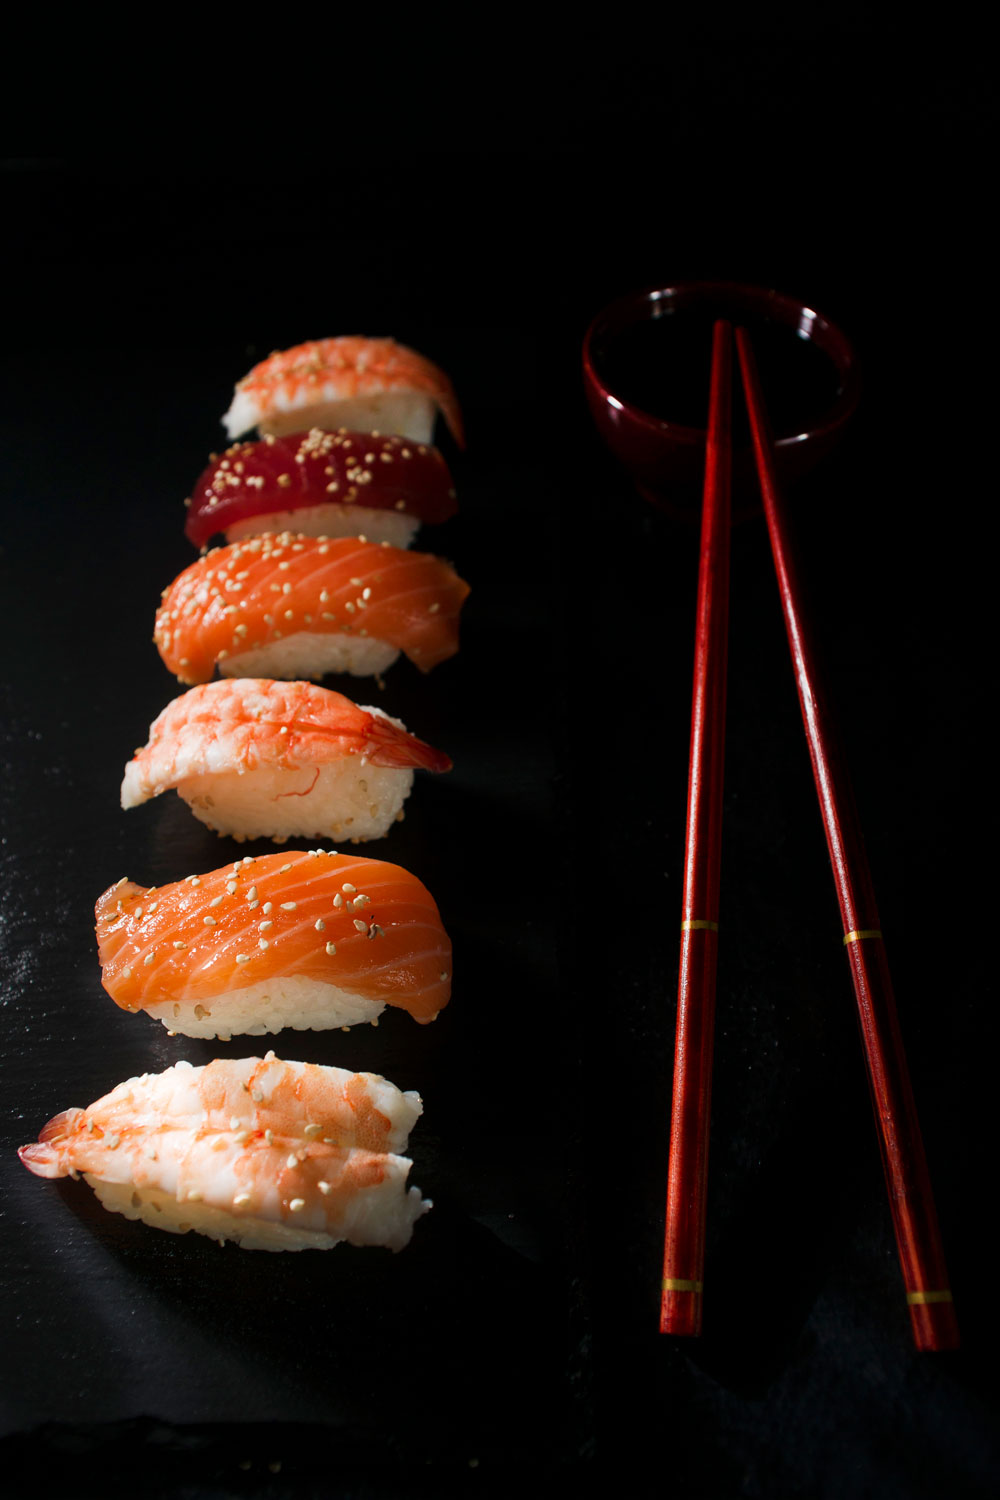 sushi-on-a-black-background-2021-08-26-15-36-47-utc